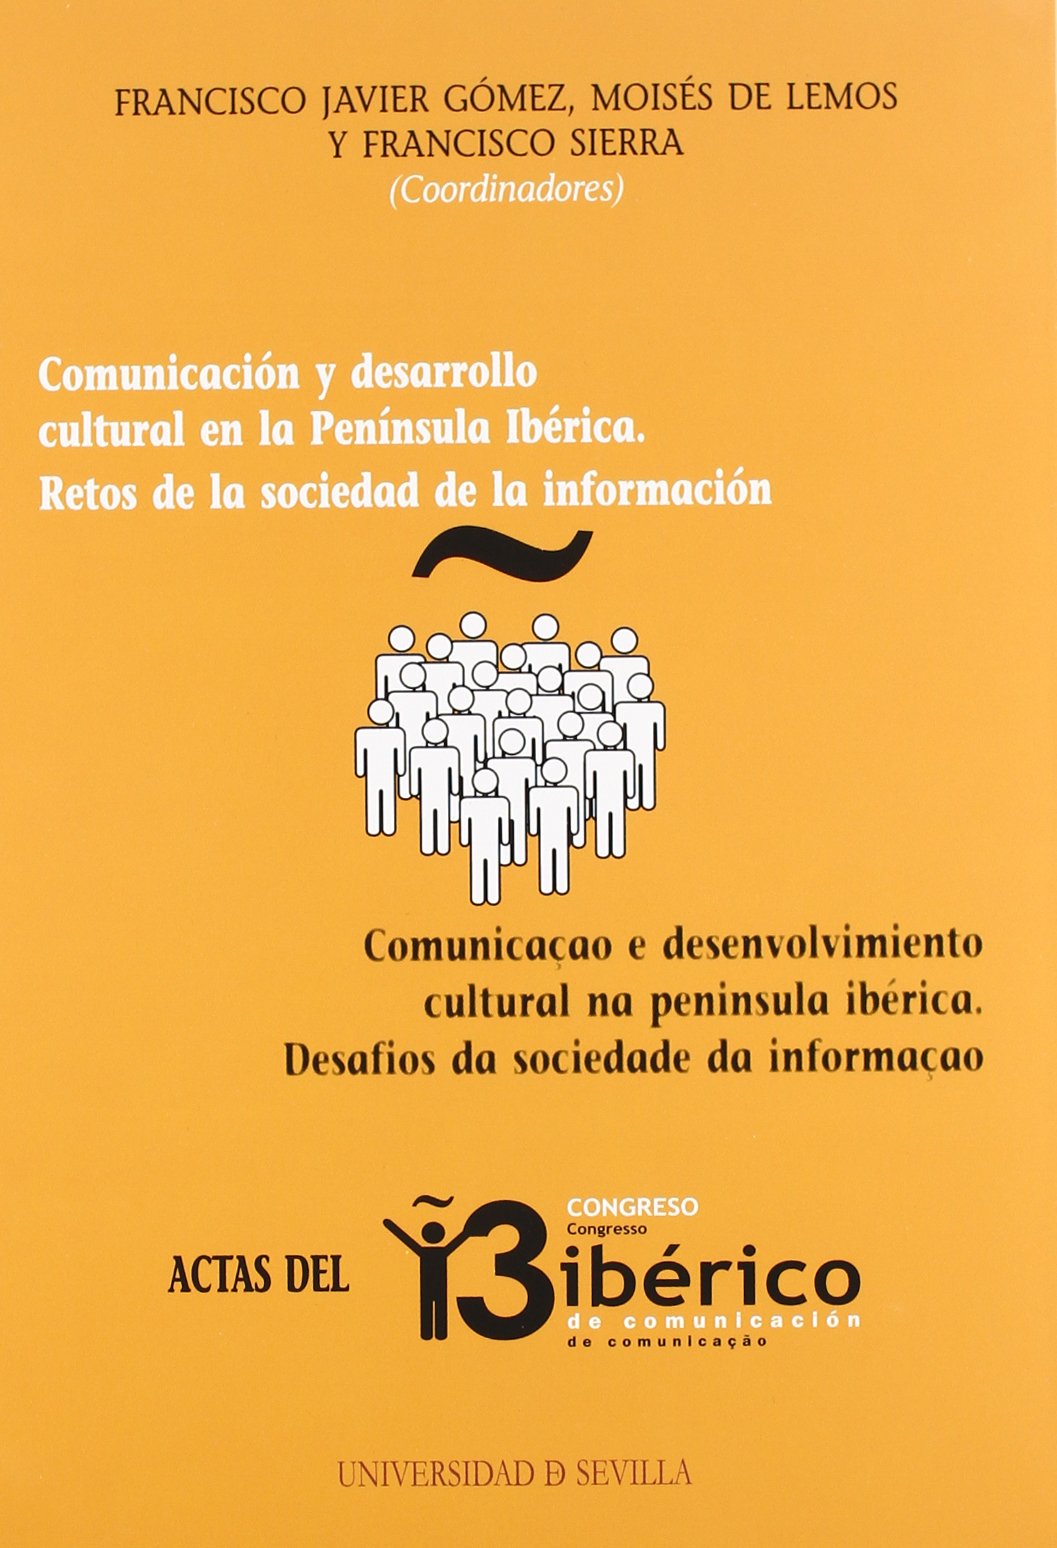 Actas del III Congreso Ibérico de Comunicación